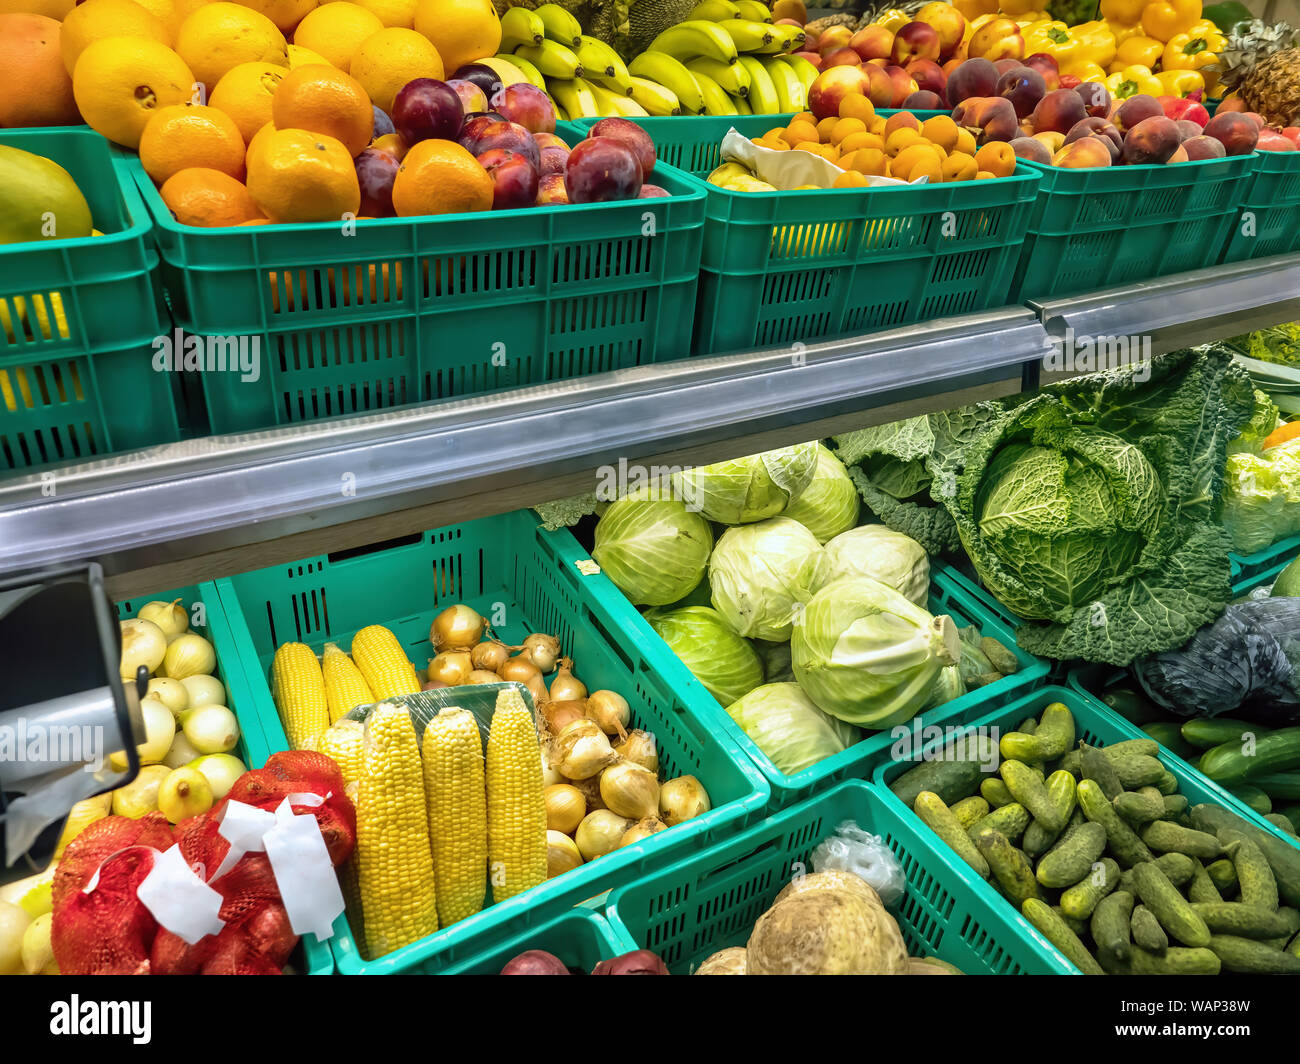 Jardiniers de racks remplis de légumes et fruits Banque D'Images